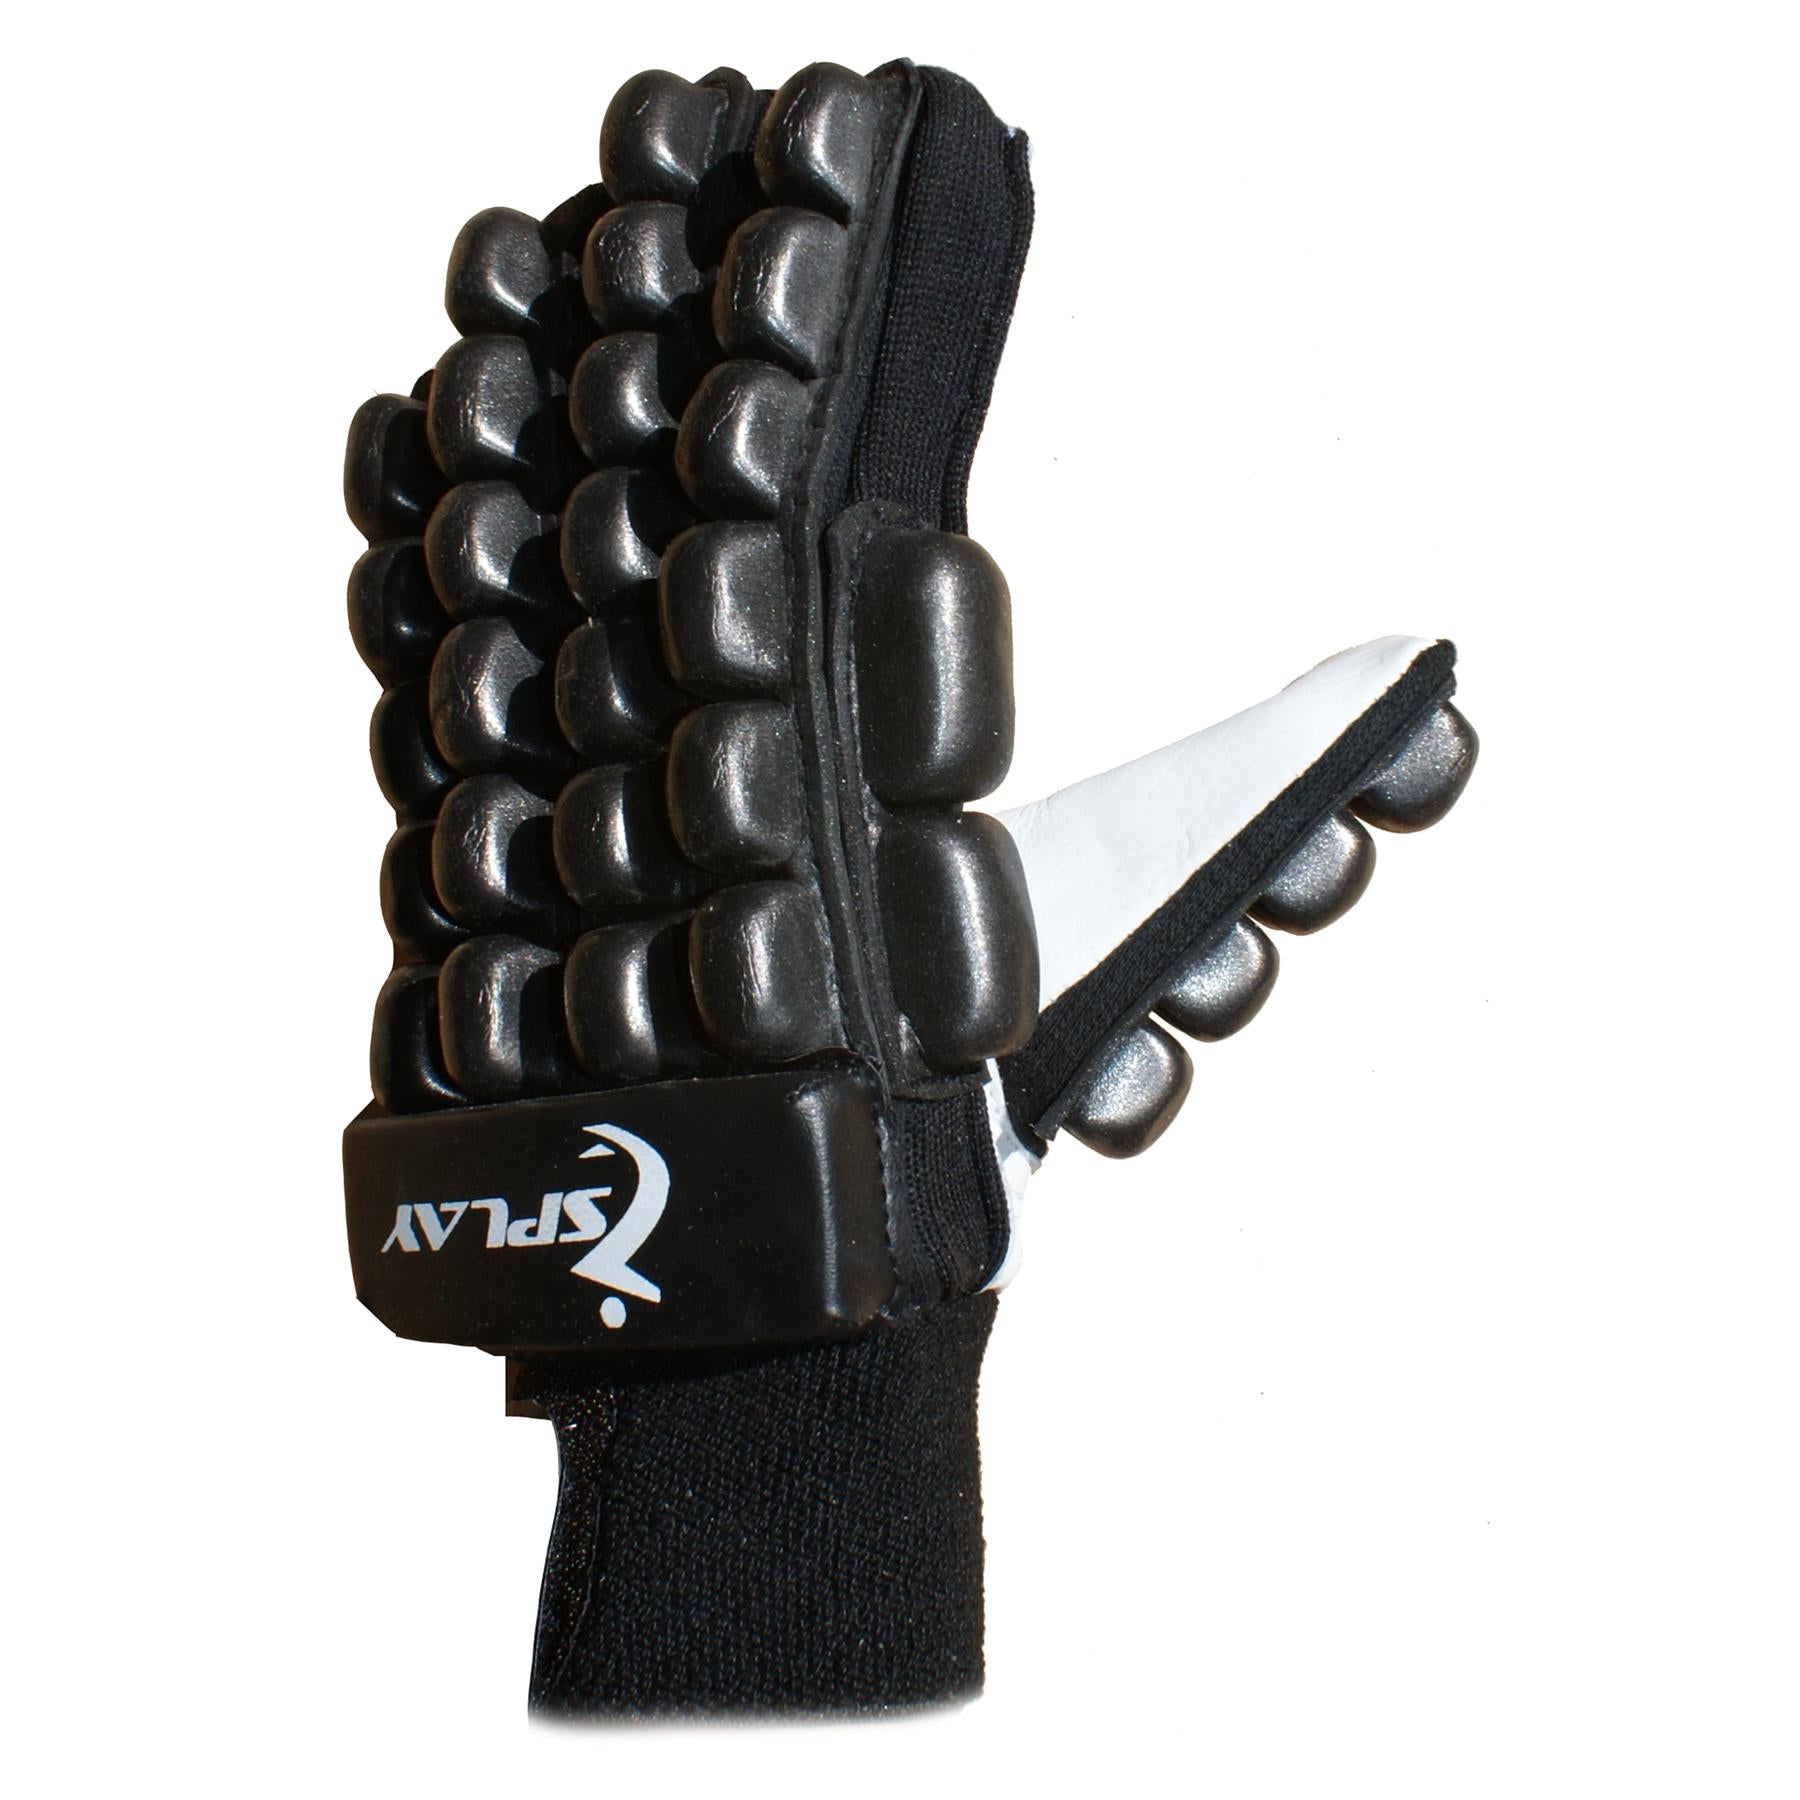 Buy Splay Club hockey Gloves Black-Splay (UK) Limited-Splay UK Online